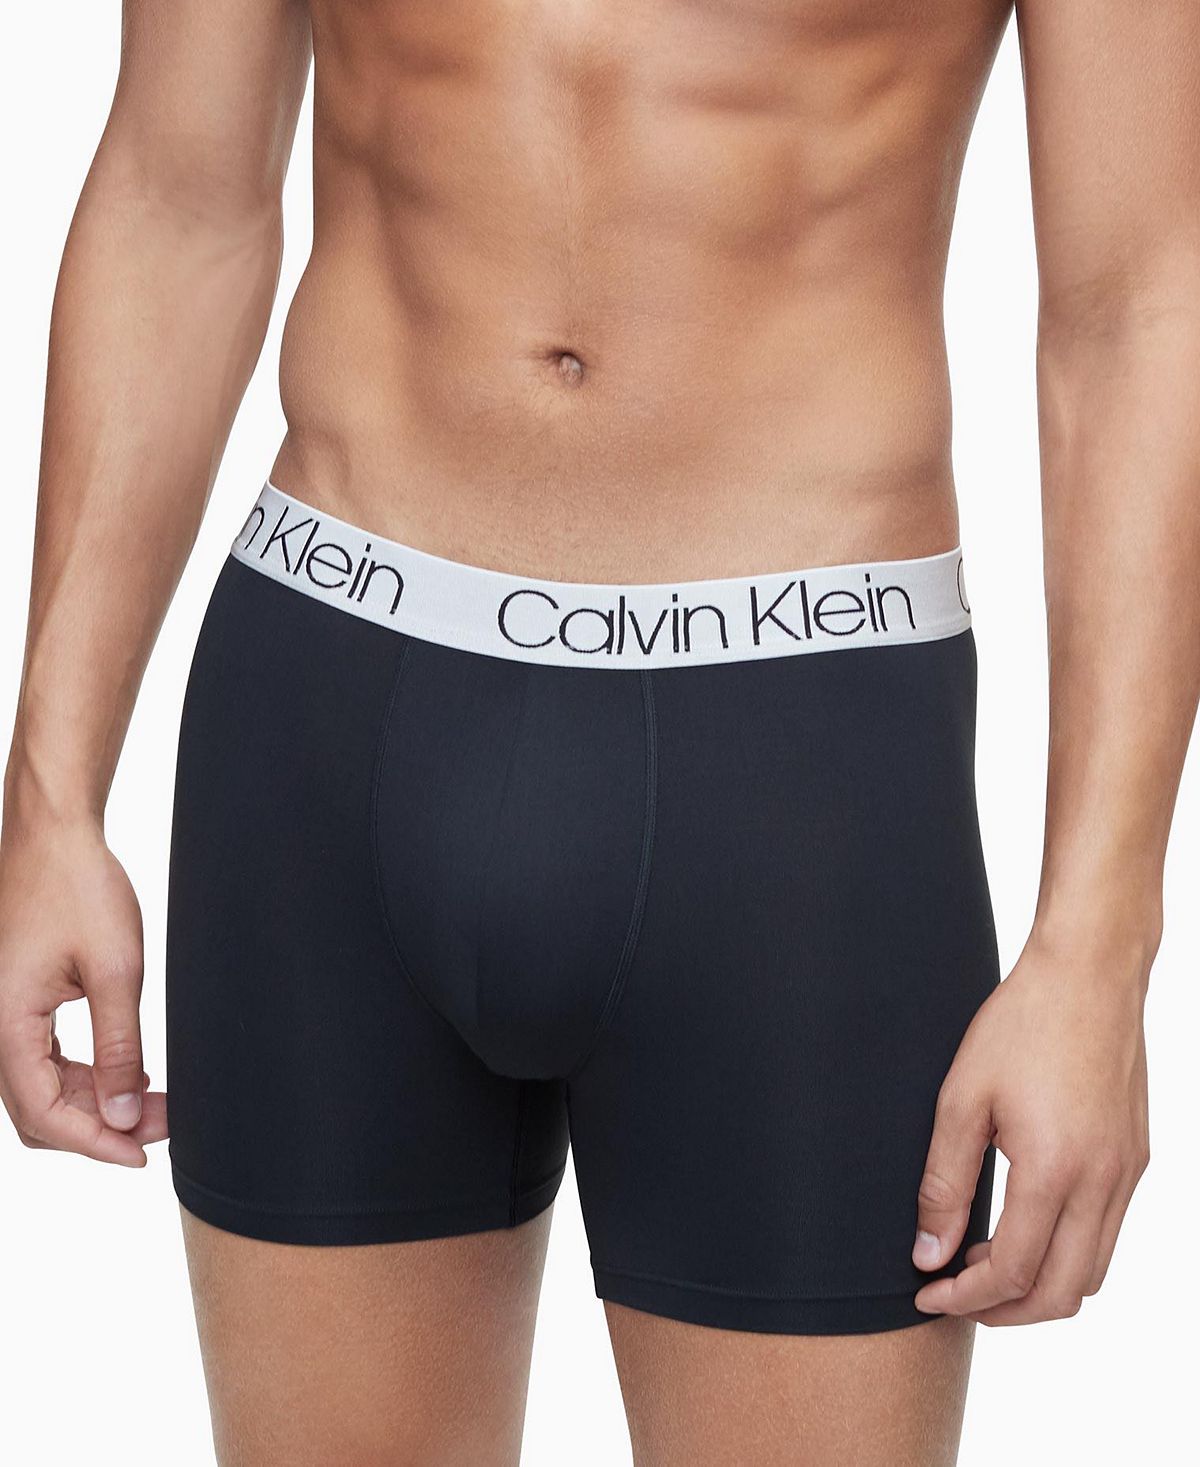 Calvin Klein 3-pk. Boxer Briefs Black